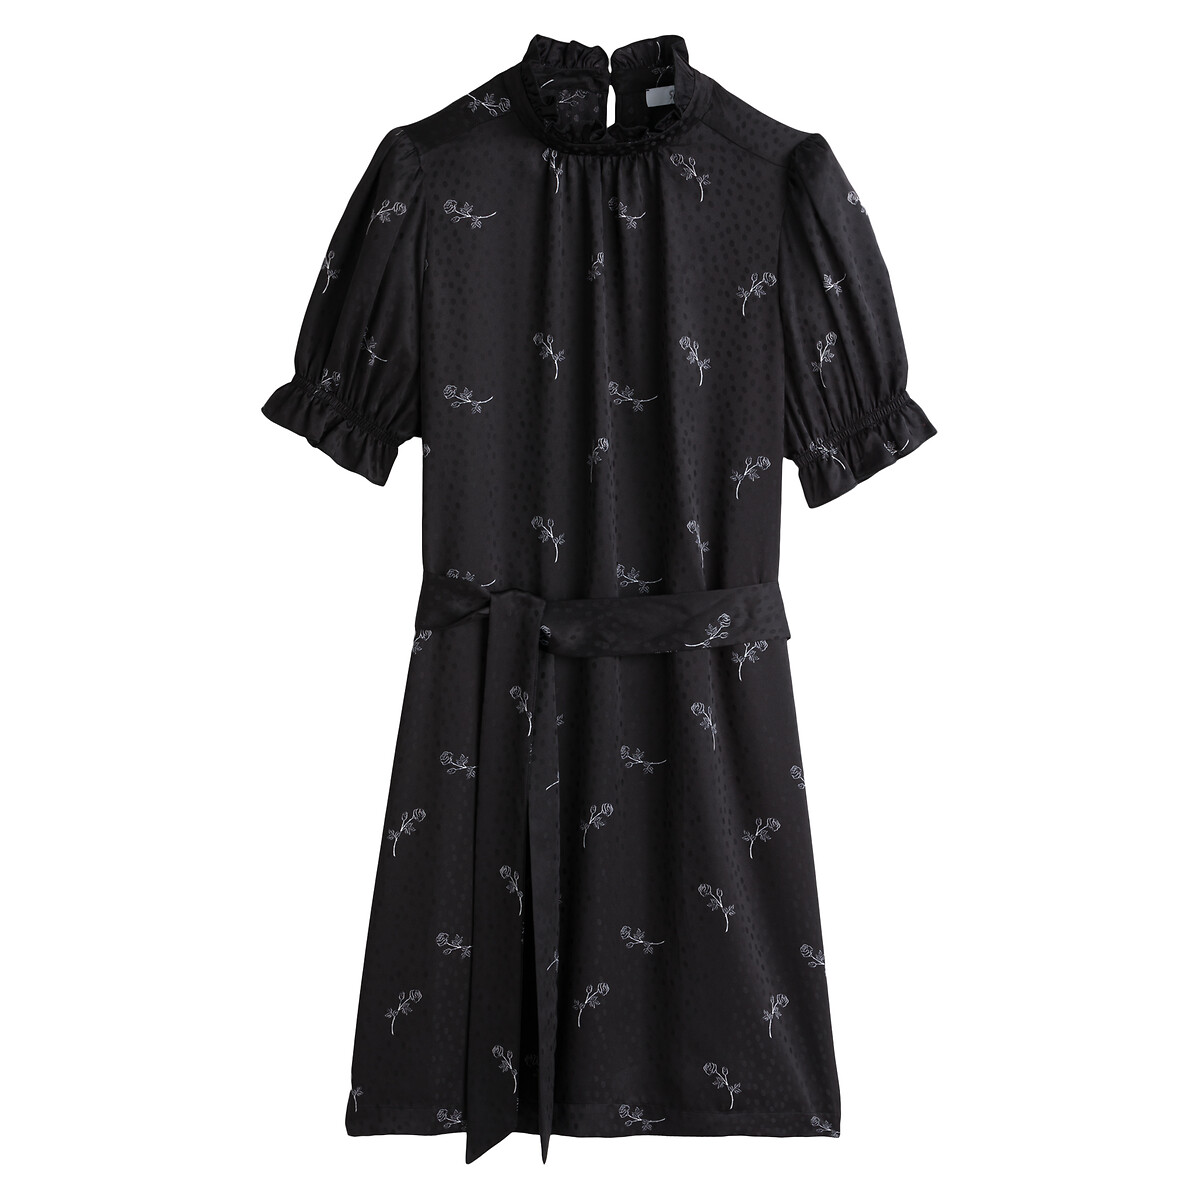 Платье LaRedoute С воротником-стойкой короткие рукава из сатина с принтом 50 черный, размер 50 - фото 5